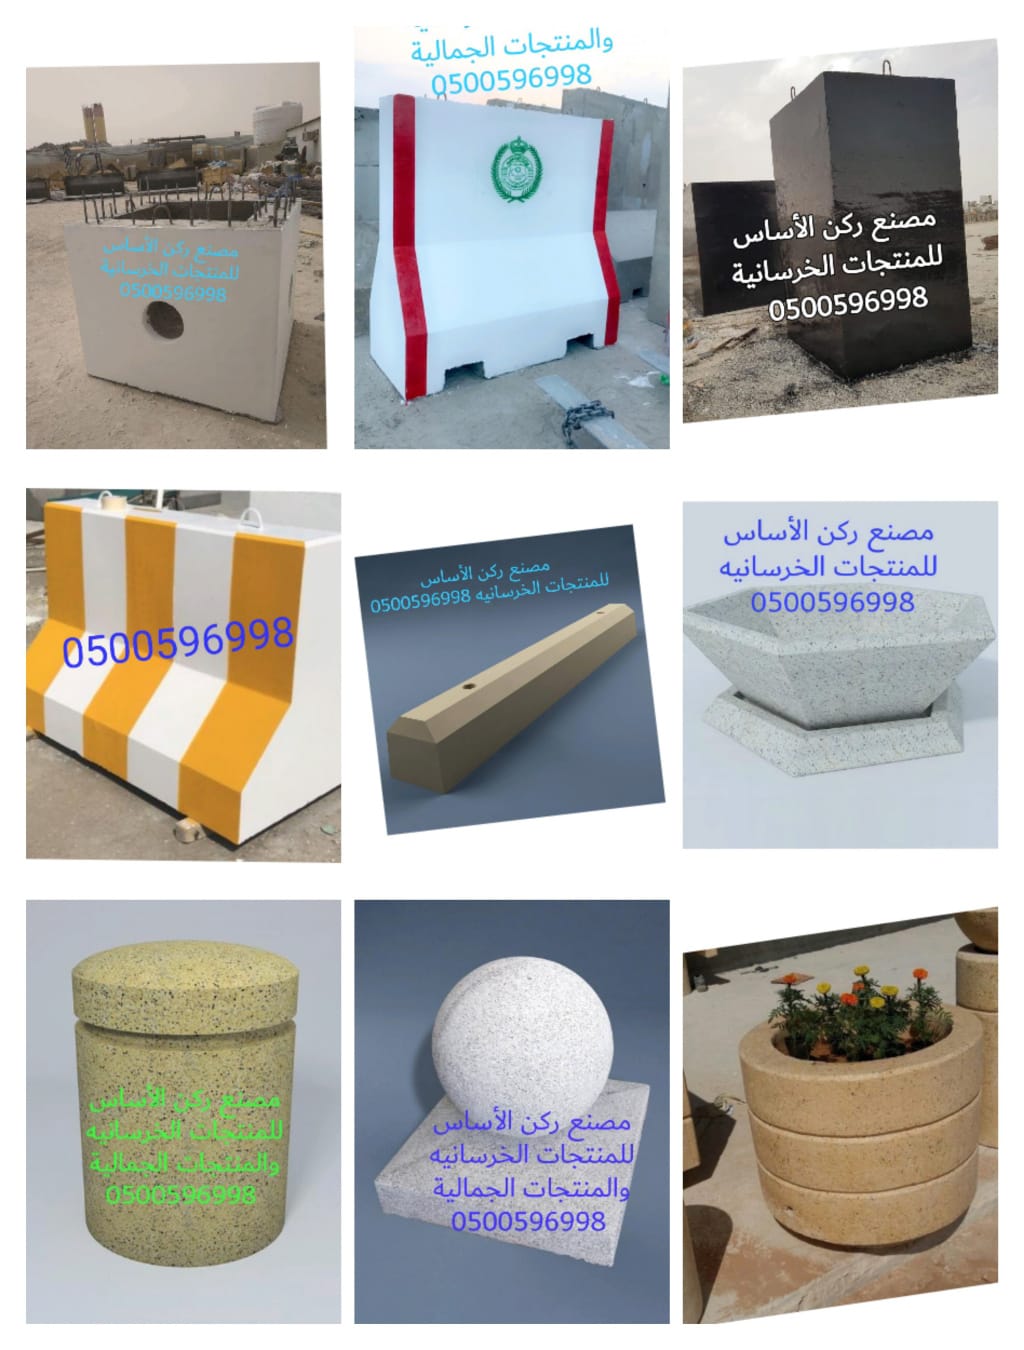 كراسي خرسانية في الرياض  احواض زرع خرسانية للبيع بالرياض  